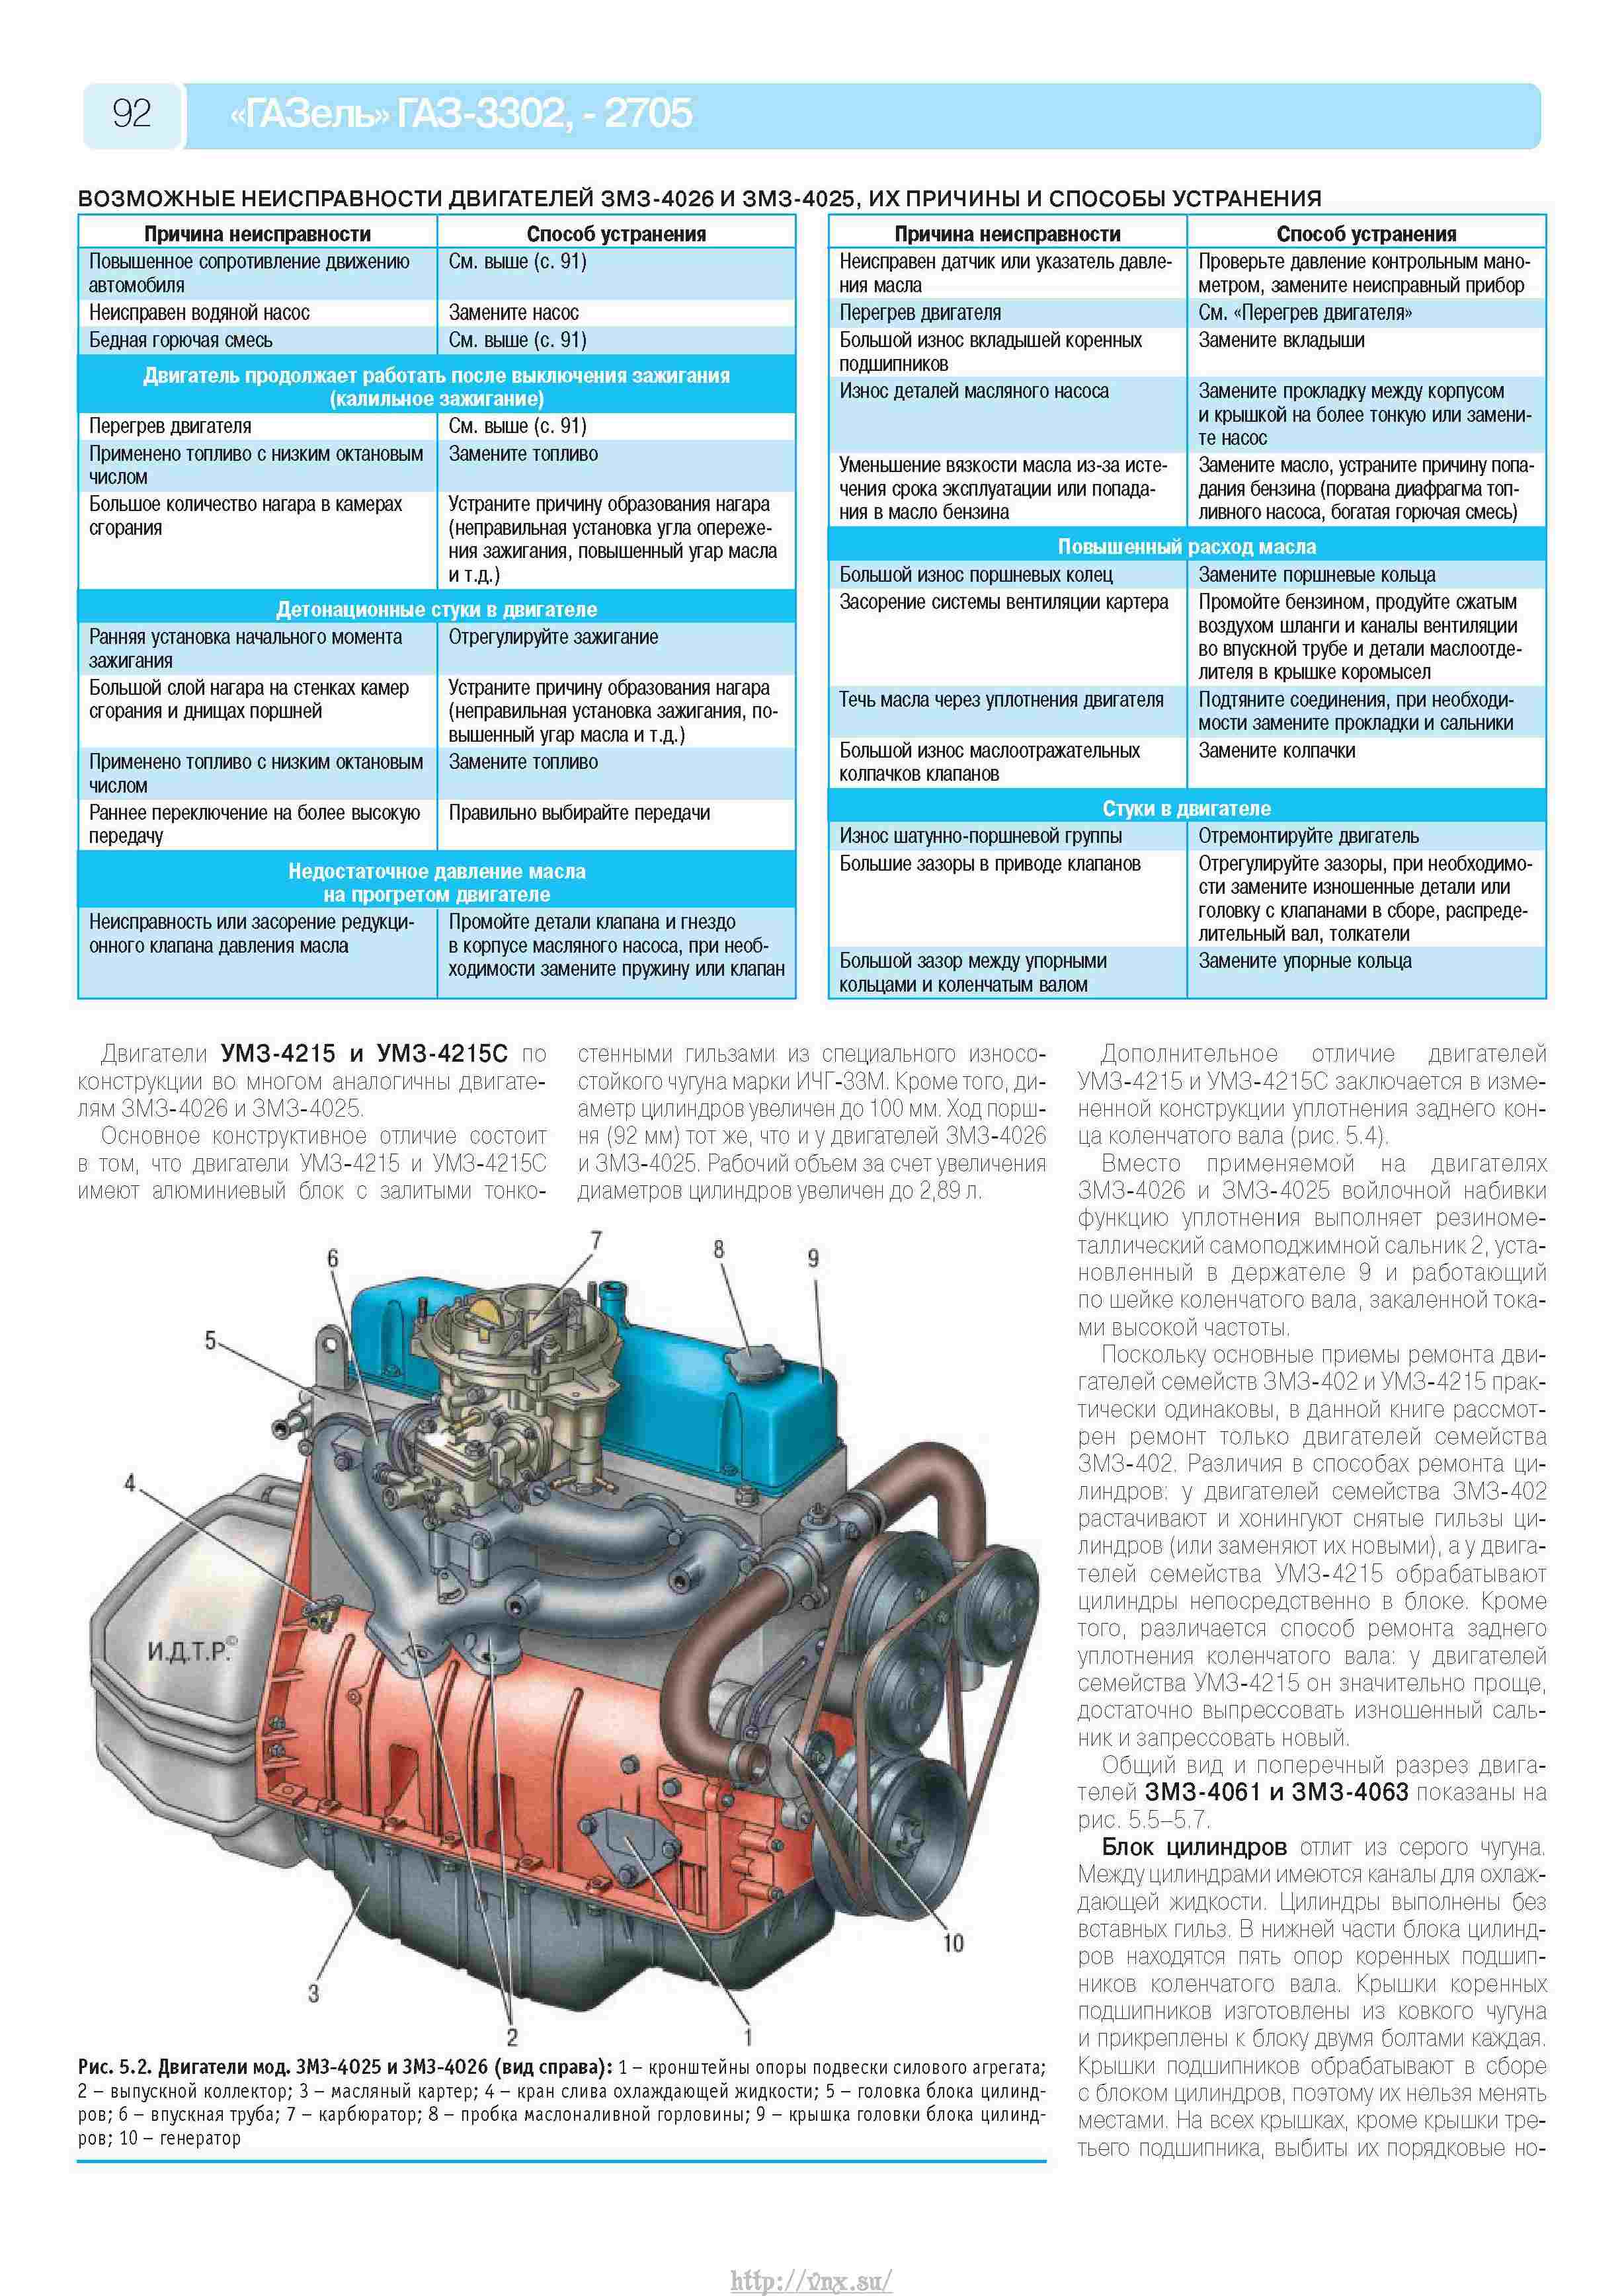 Двигатель ЗМЗ 402 технические характеристики